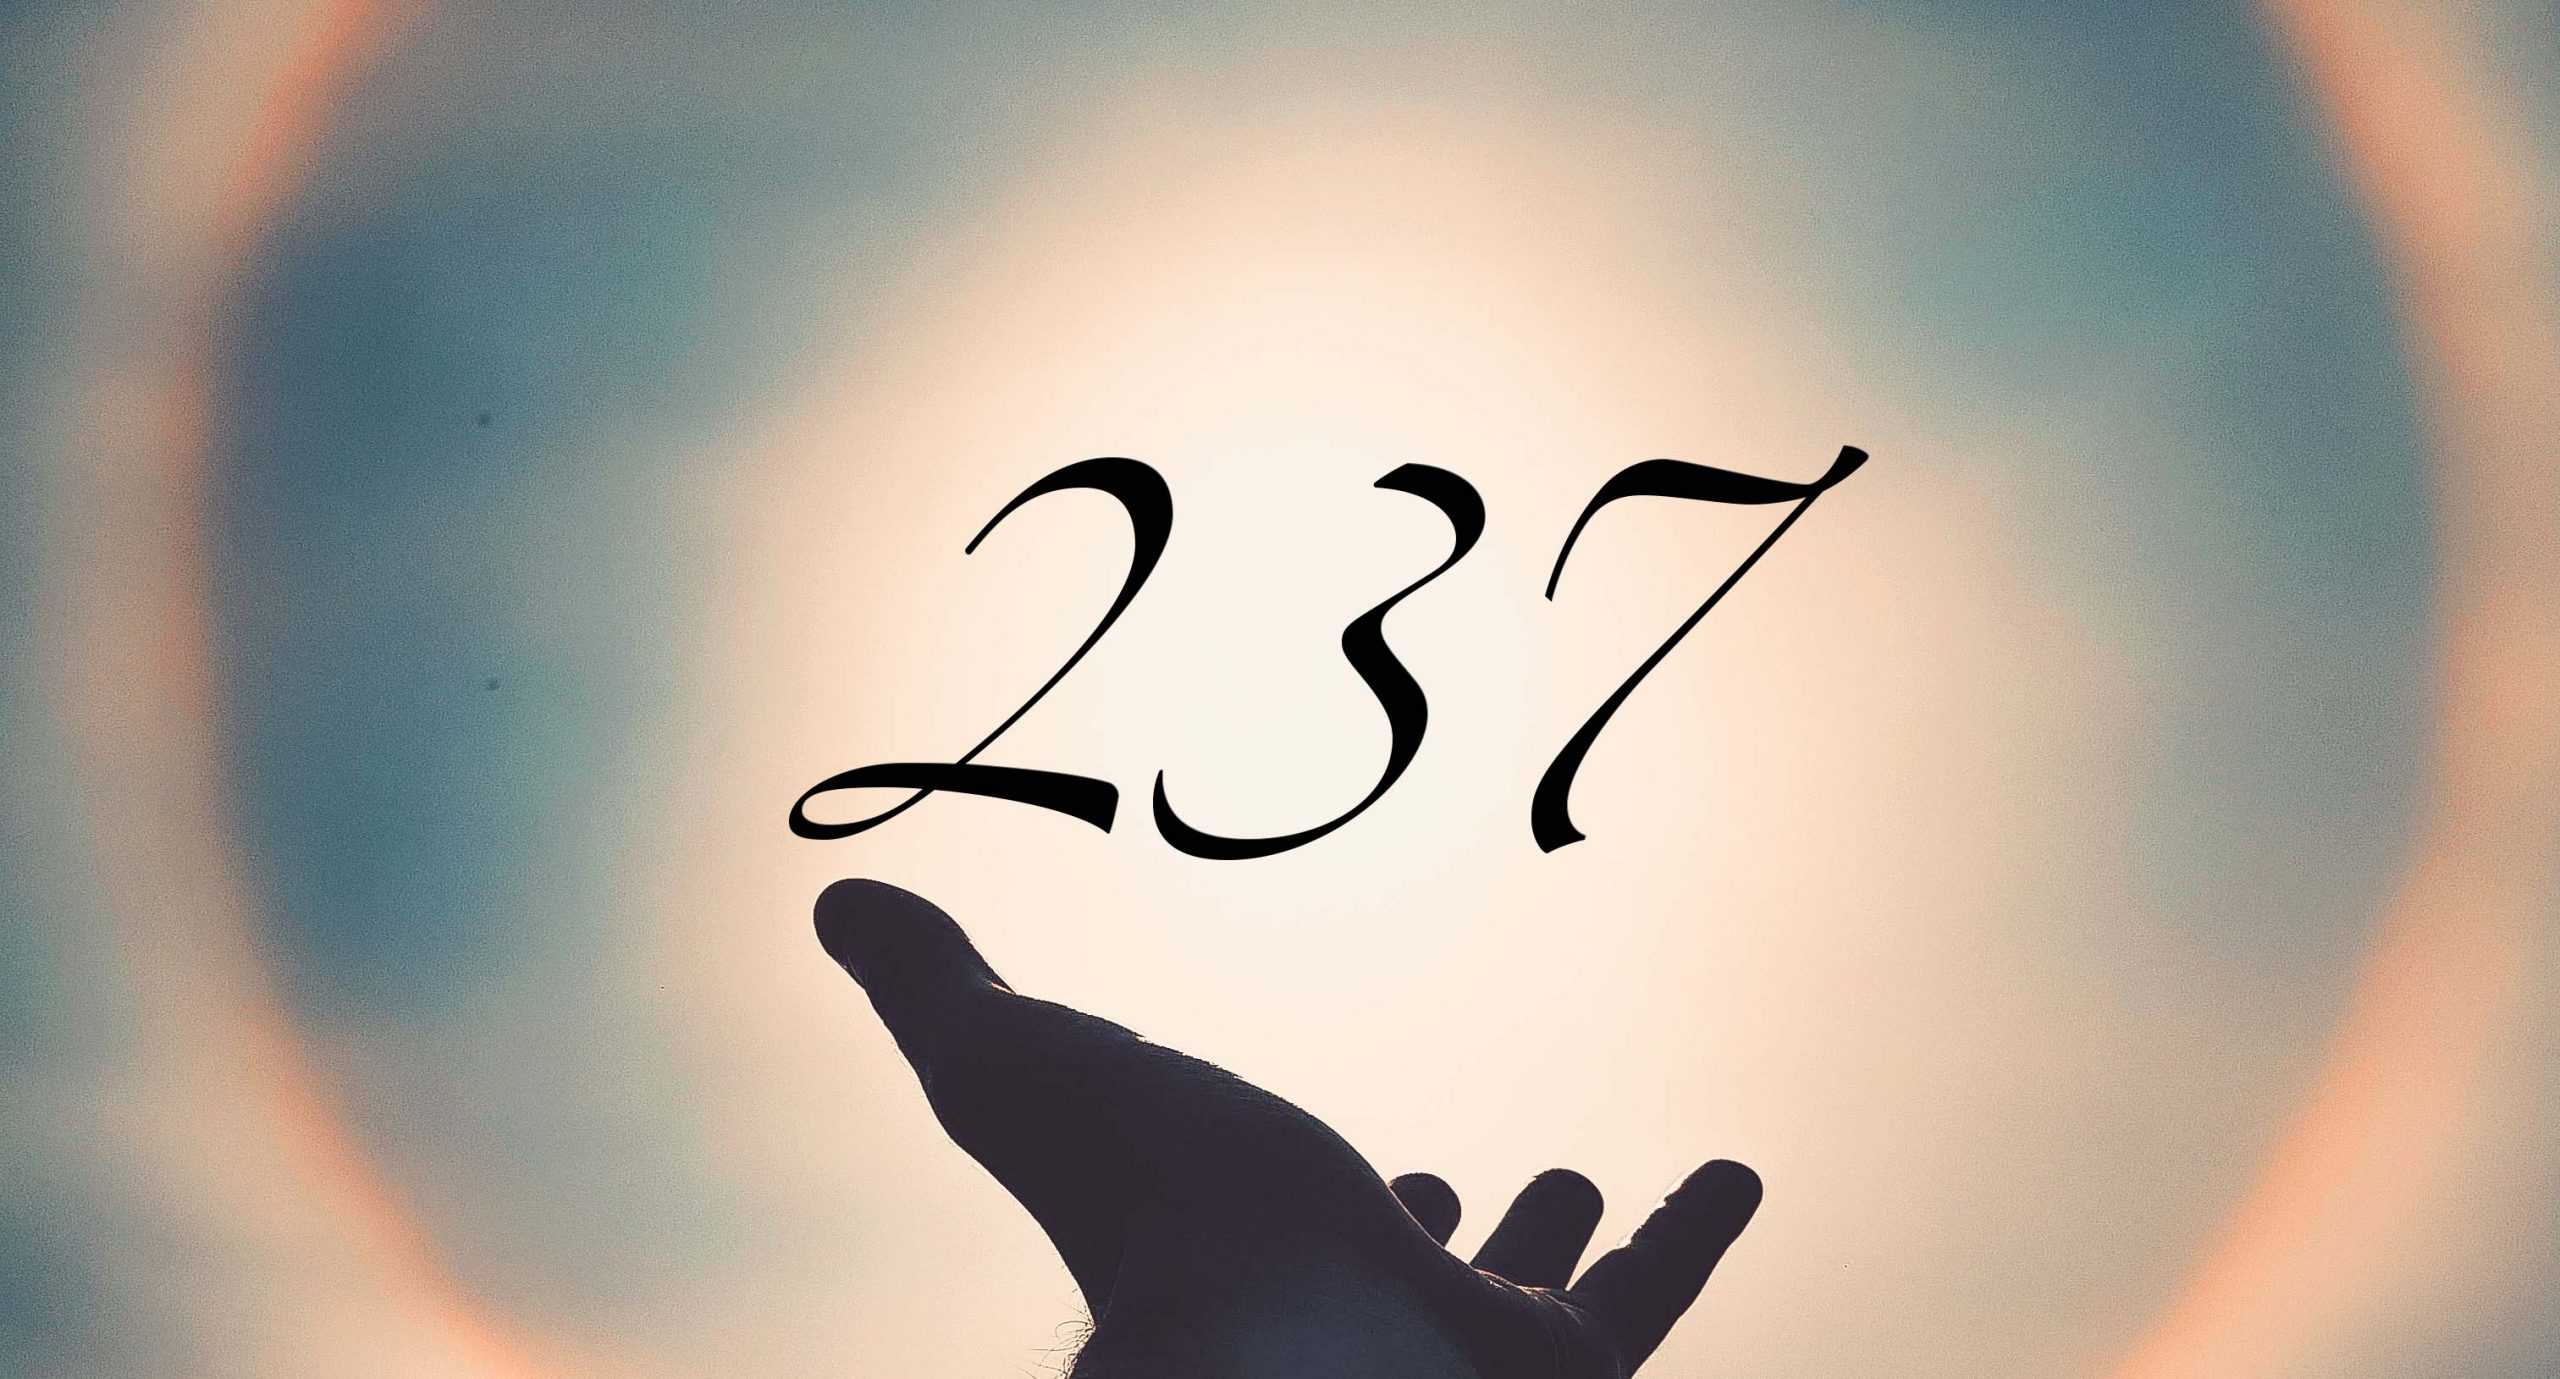 Signification du nombre 237